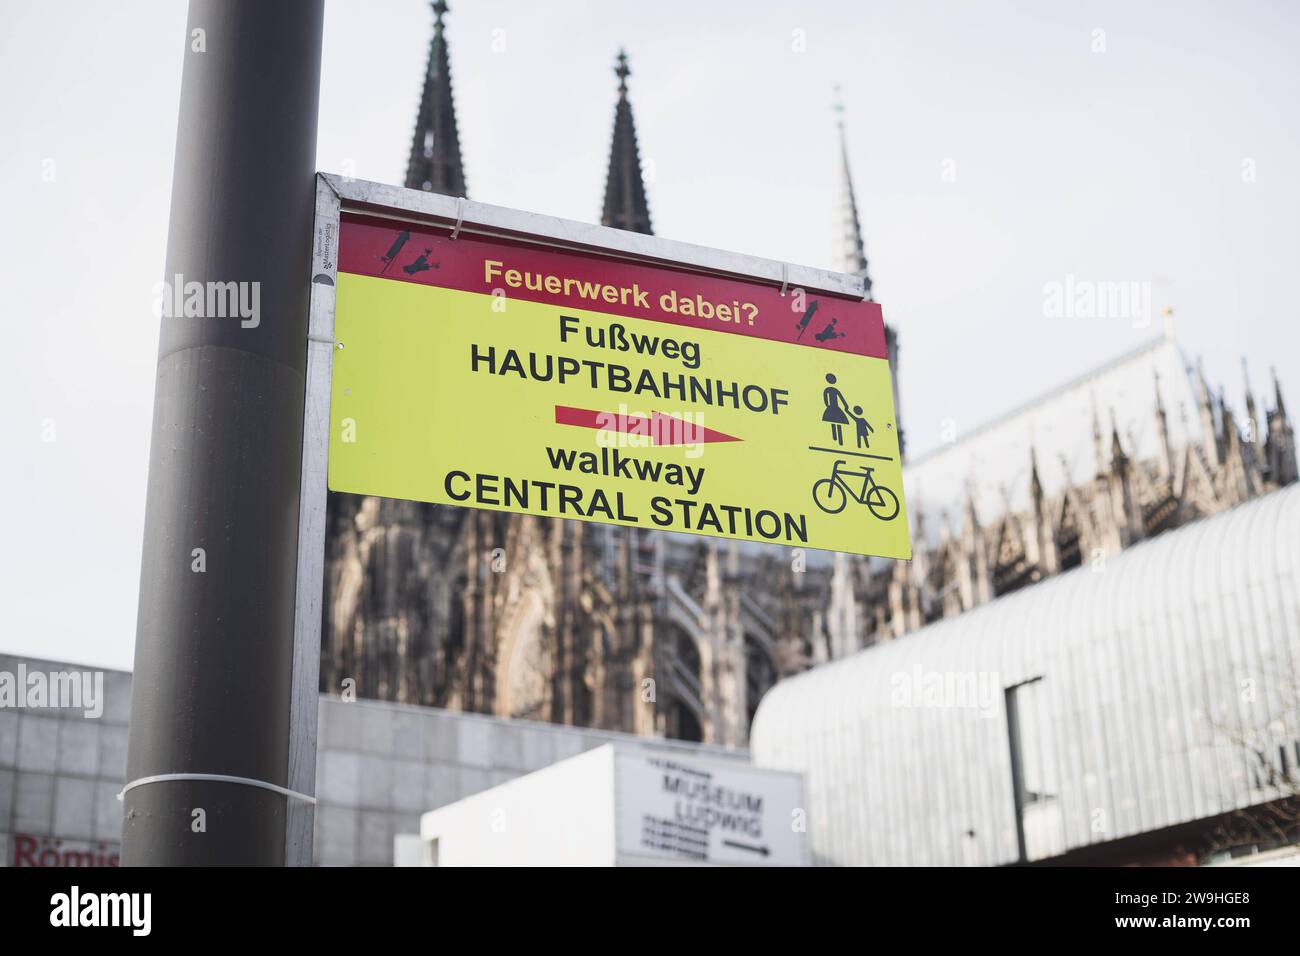 Vorbereitung zum Silvester in Köln, 28.12.2023 ein Schild auf dem stehen die Richtung zum Platz, wo Feuerwerk erlaubt ist. Auf dem Schild steht Feuerwerk dabei Fußweg zum Hauptbahnhof , Gehweg zum Hauptbahnhof . Auf dem Hintergrund sieht man Kölner Dom Vorbereitung zum Silvester in Köln, 28.12.2023 Köln NRW Deutschland *** Vorbereitung auf Silvesterabend in Köln, 28 12 2023 Ein Schild, das in Richtung des Platzes steht, wo Feuerwerk erlaubt ist auf dem Schild steht Feuerwerk auf dem Weg zum Hauptbahnhof, Gehweg zum Hauptbahnhof im Hintergrund kann man den Kölner Dom Prä sehen Stockfoto